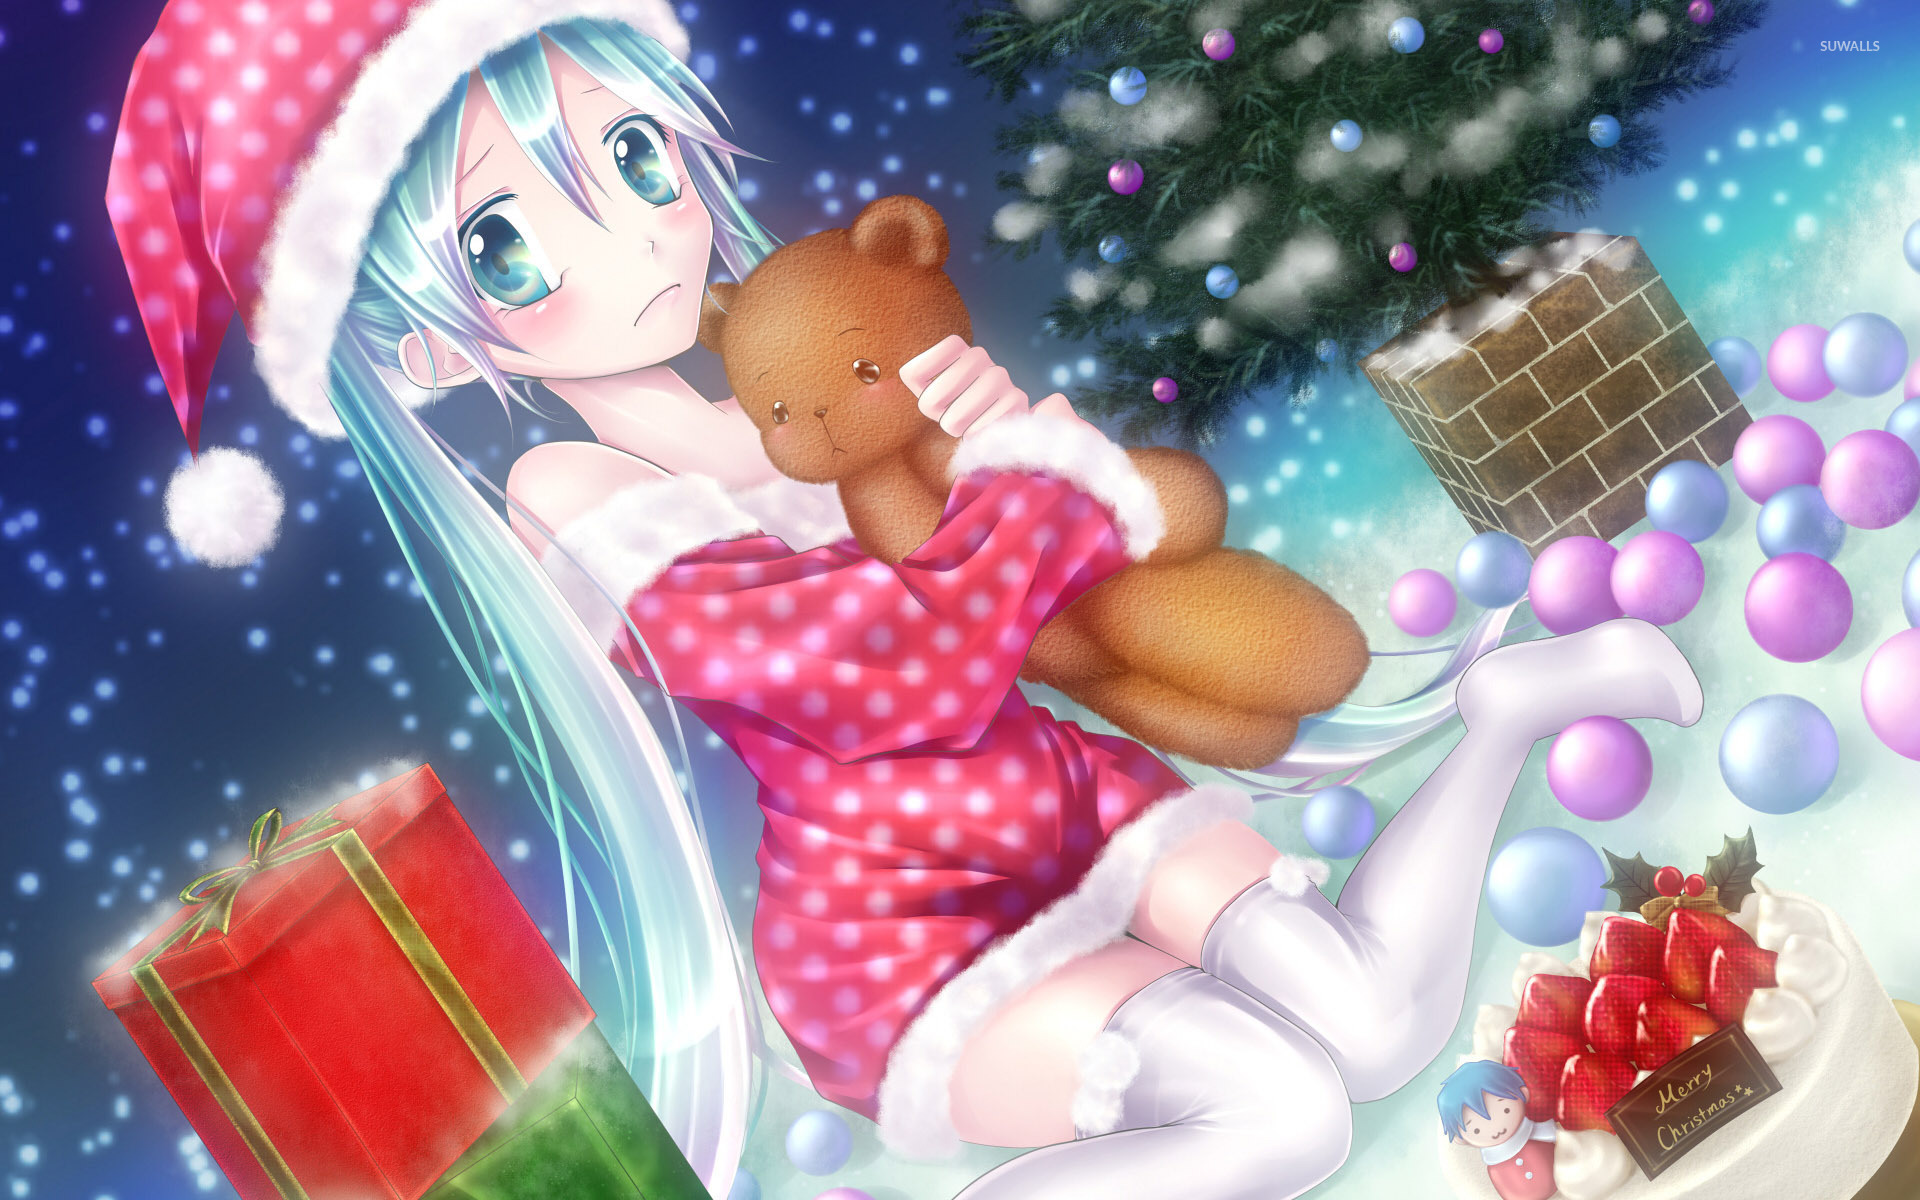 Hatsune Miku Christmas Wallpapers